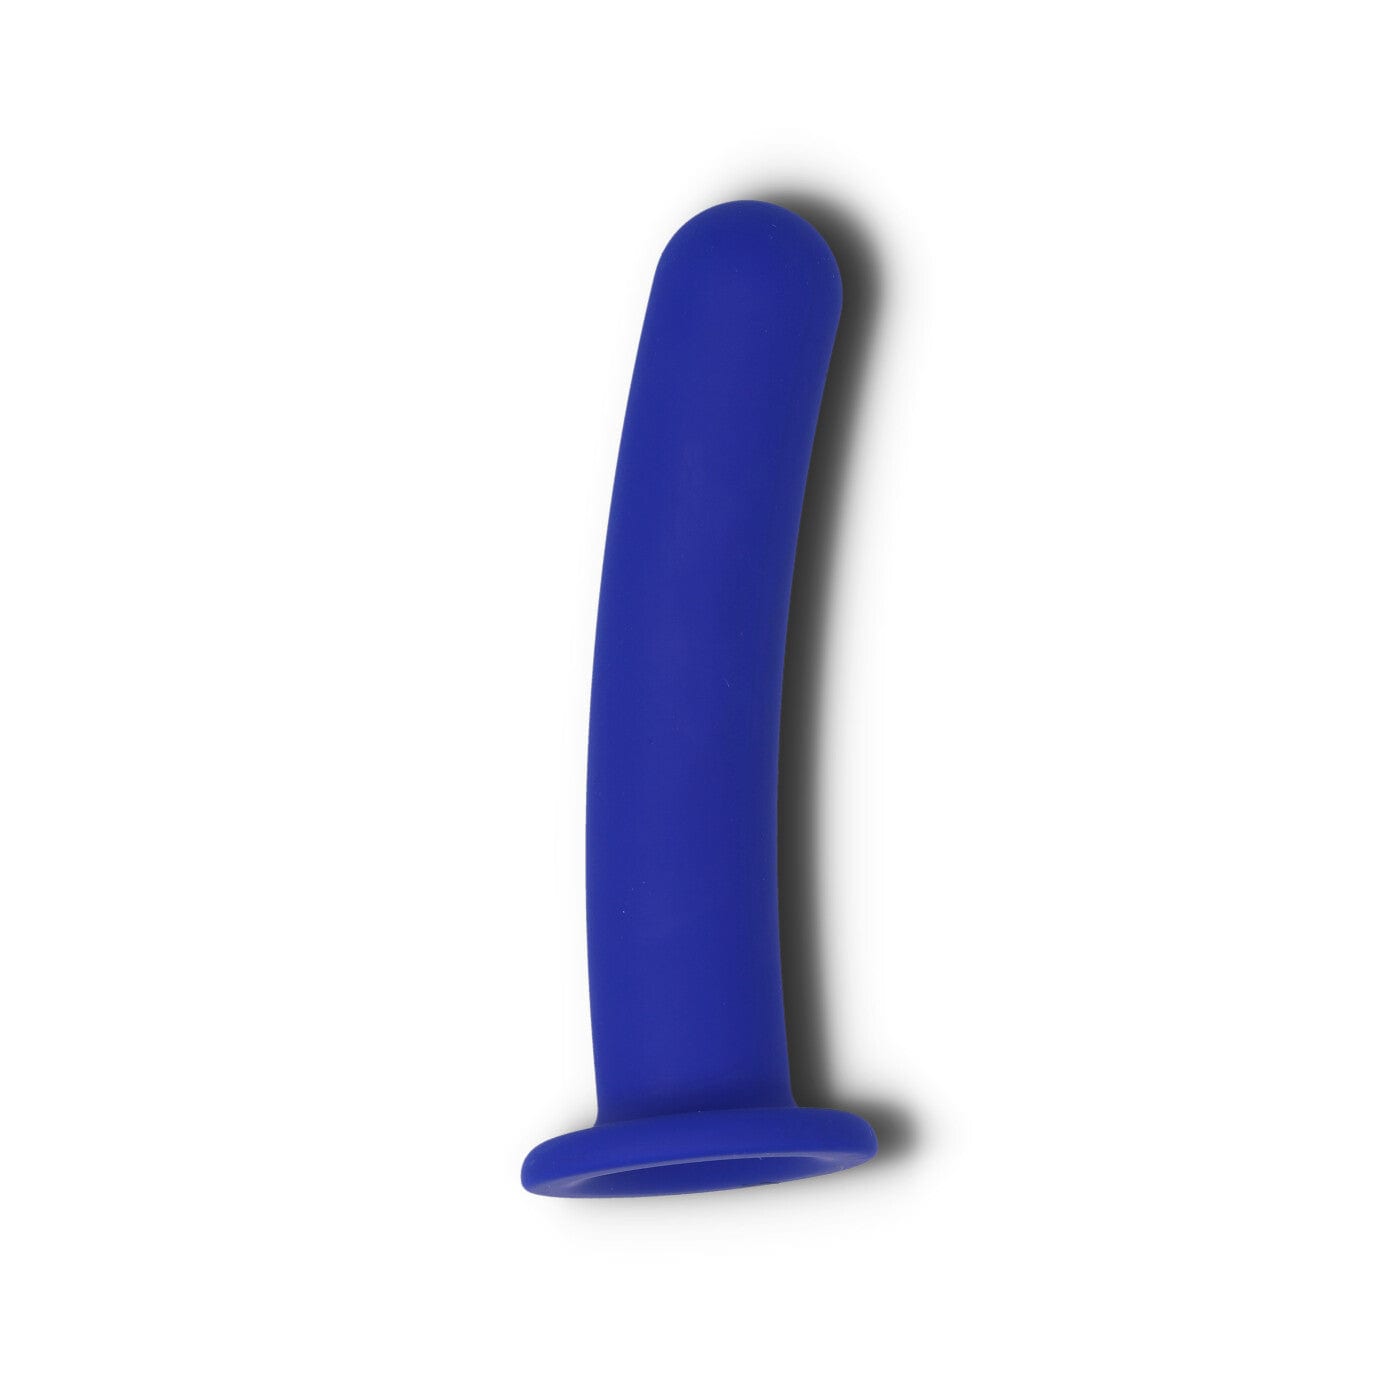 Pogo harness kompatibel dildo i blå fra unbound babes liggende